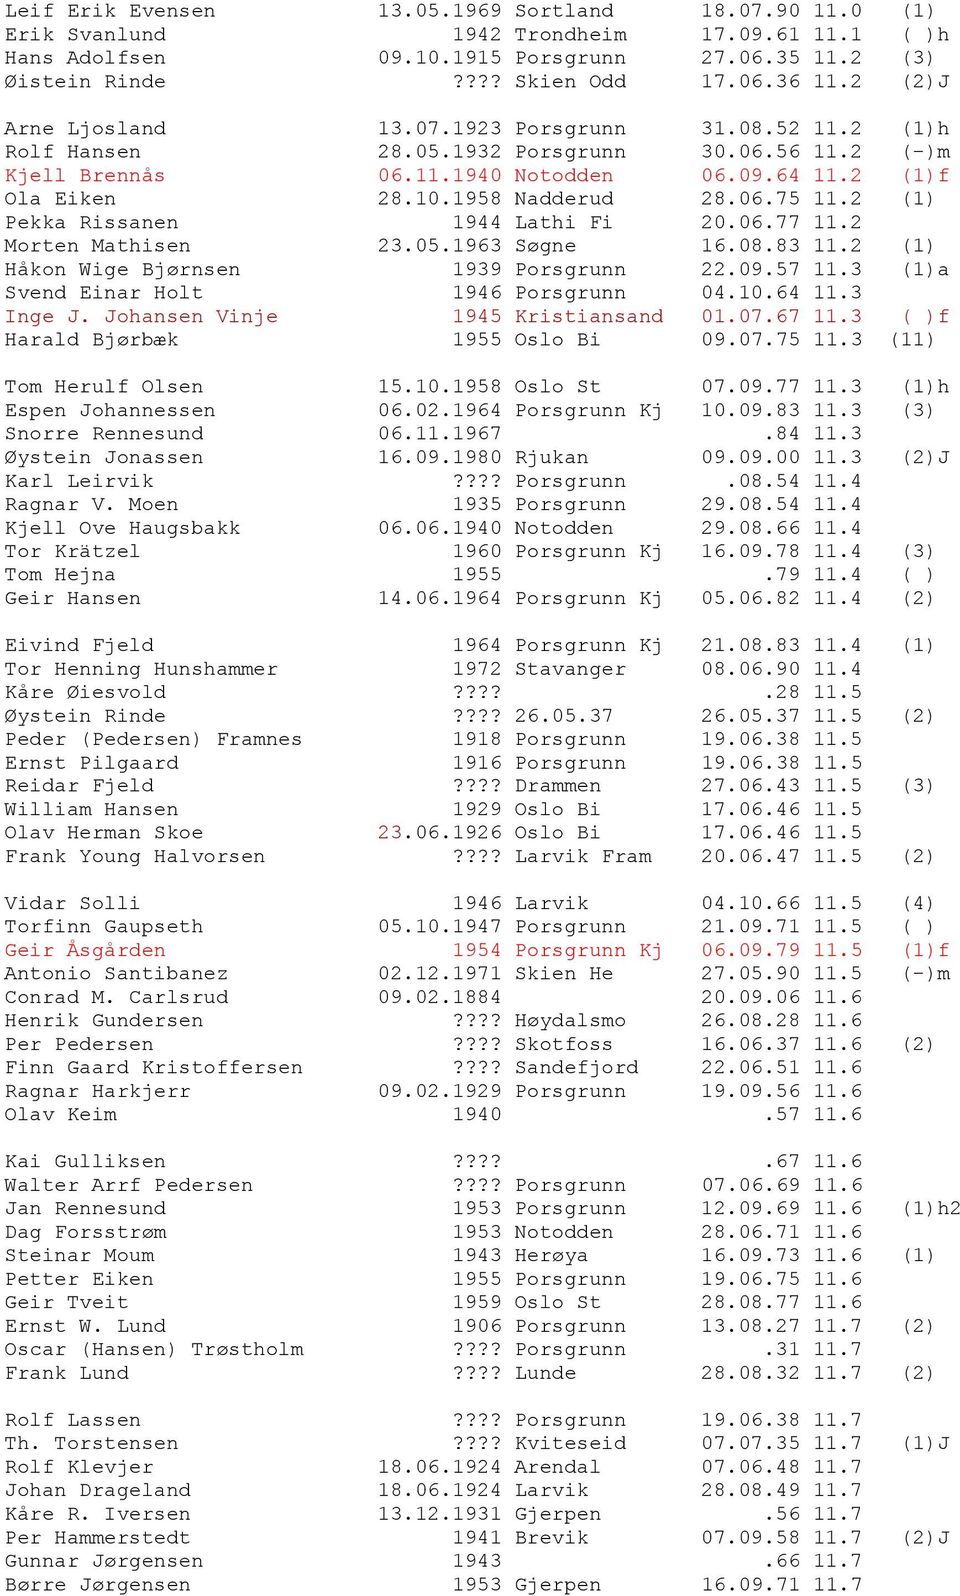 06.75 11.2 (1) Pekka Rissanen 1944 Lathi Fi 20.06.77 11.2 Morten Mathisen 23.05.1963 Søgne 16.08.83 11.2 (1) Håkon Wige Bjørnsen 1939 Porsgrunn 22.09.57 11.3 (1)a Svend Einar Holt 1946 Porsgrunn 04.